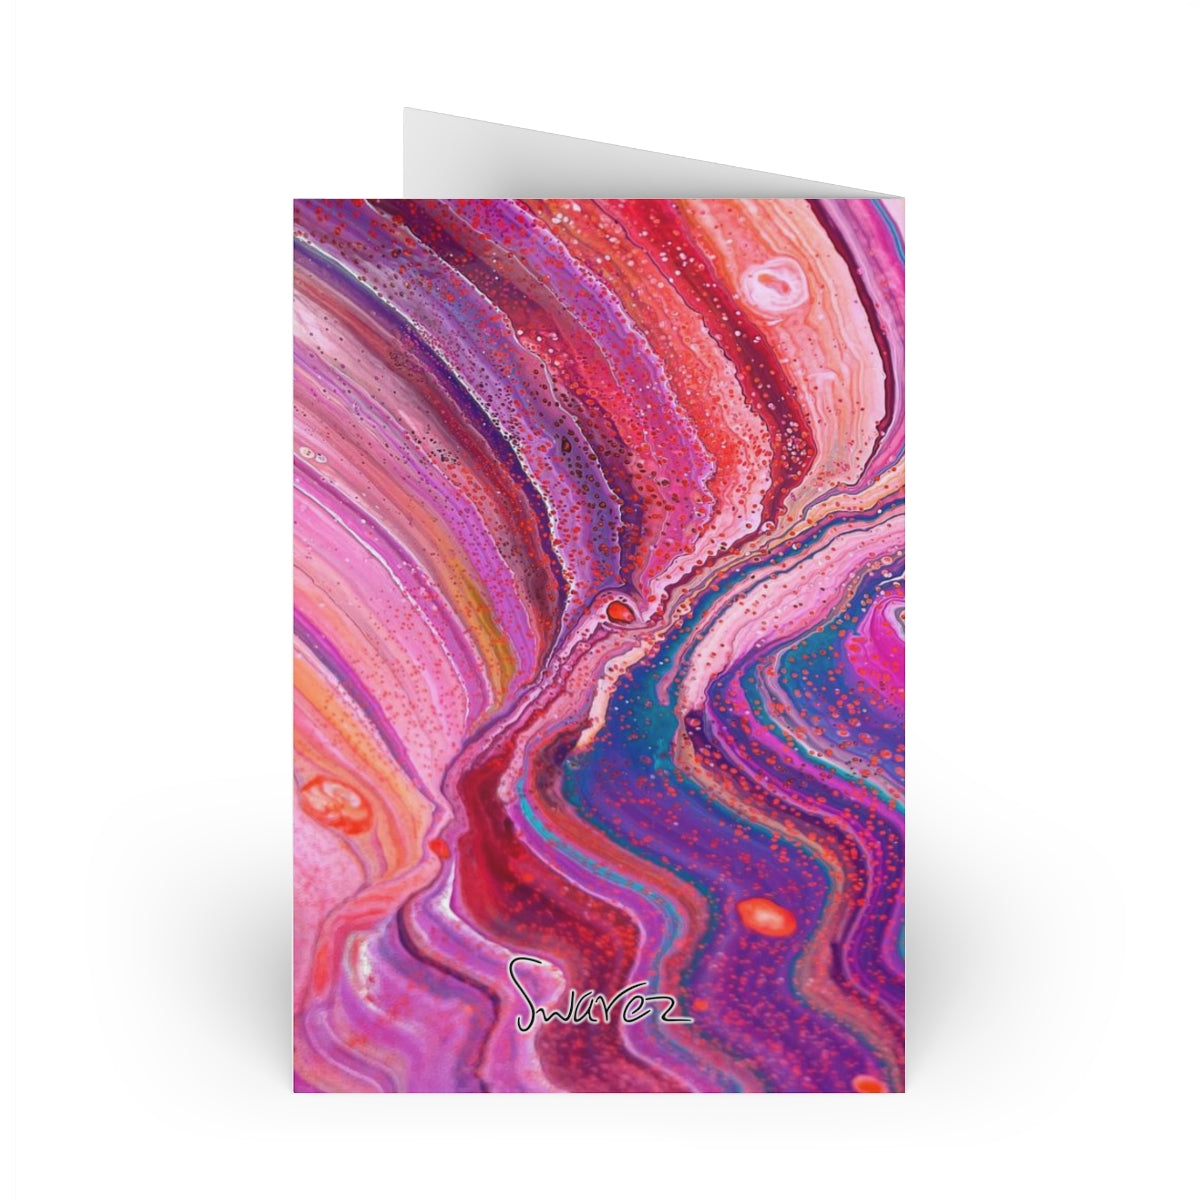 Cartões comemorativos (1 ou 10 unidades) - Design cósmico